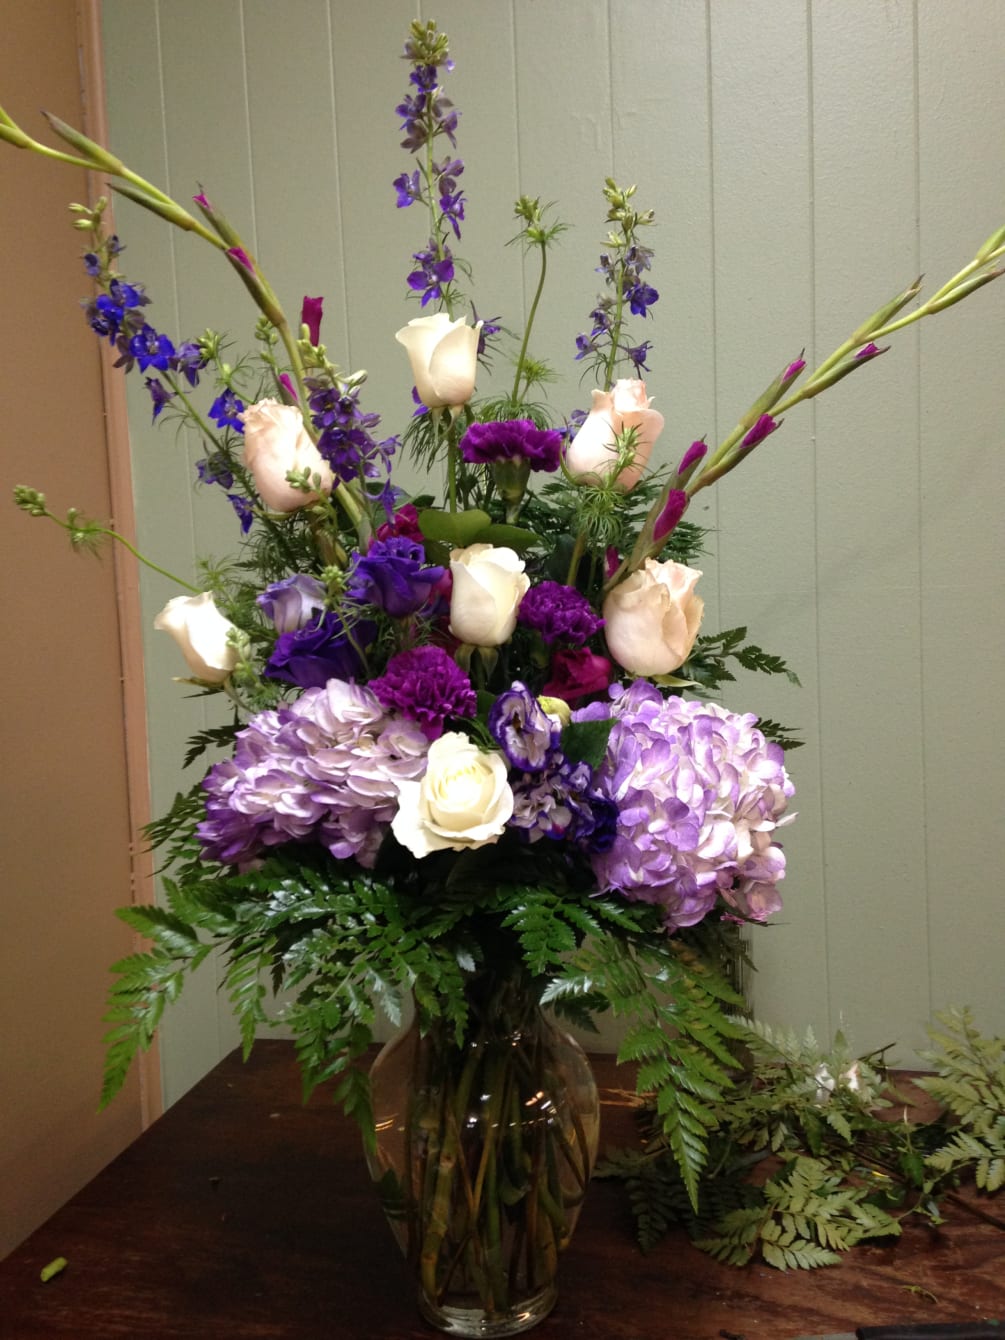 Purple Hydrangeas, purple larkspur, purple gladiolas, white roses,  purple carnations and